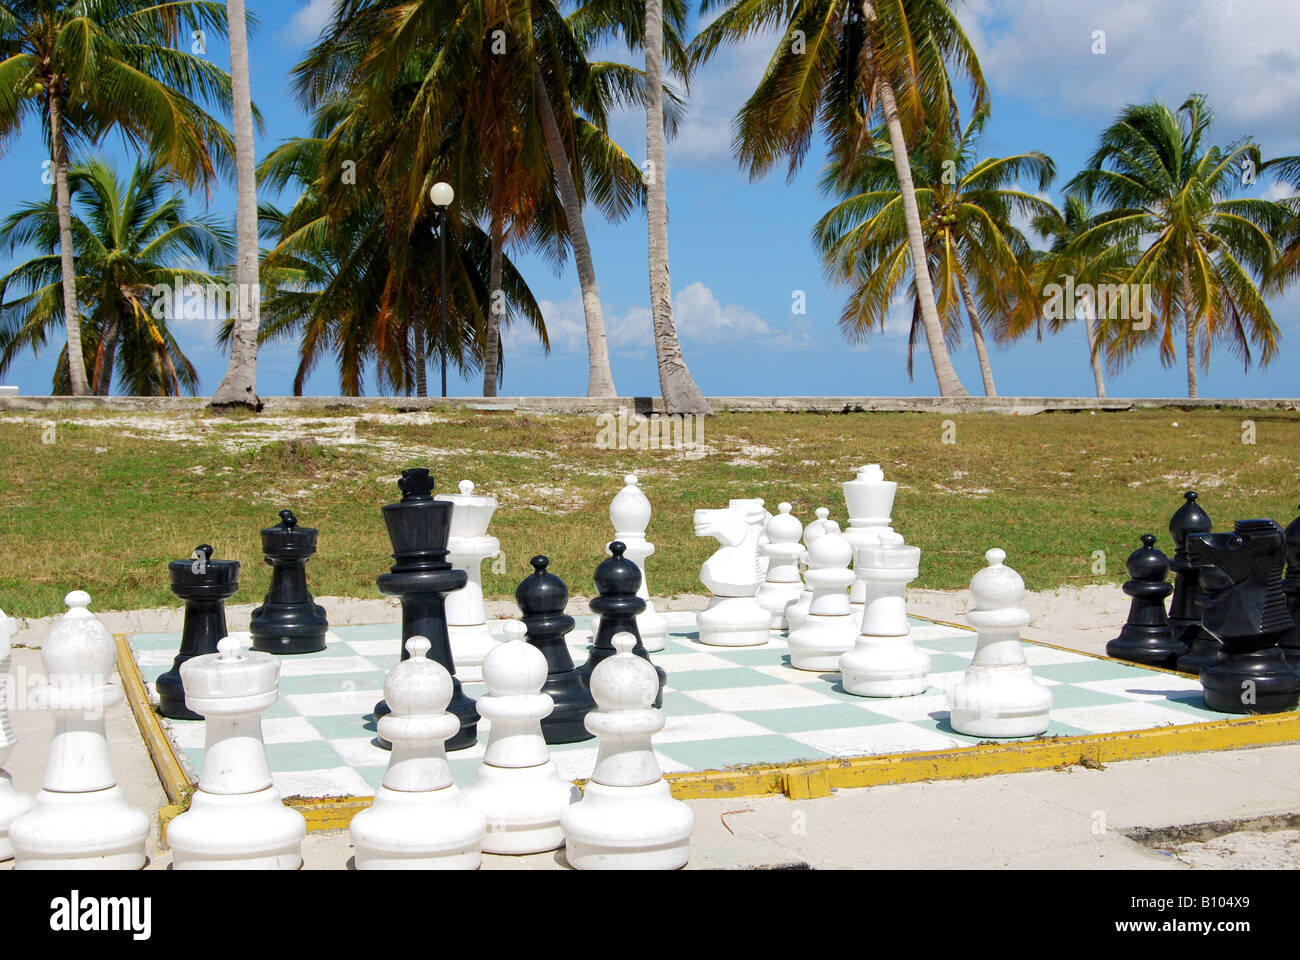 Chess Travel: Brazil: Chess, Music and Papaya